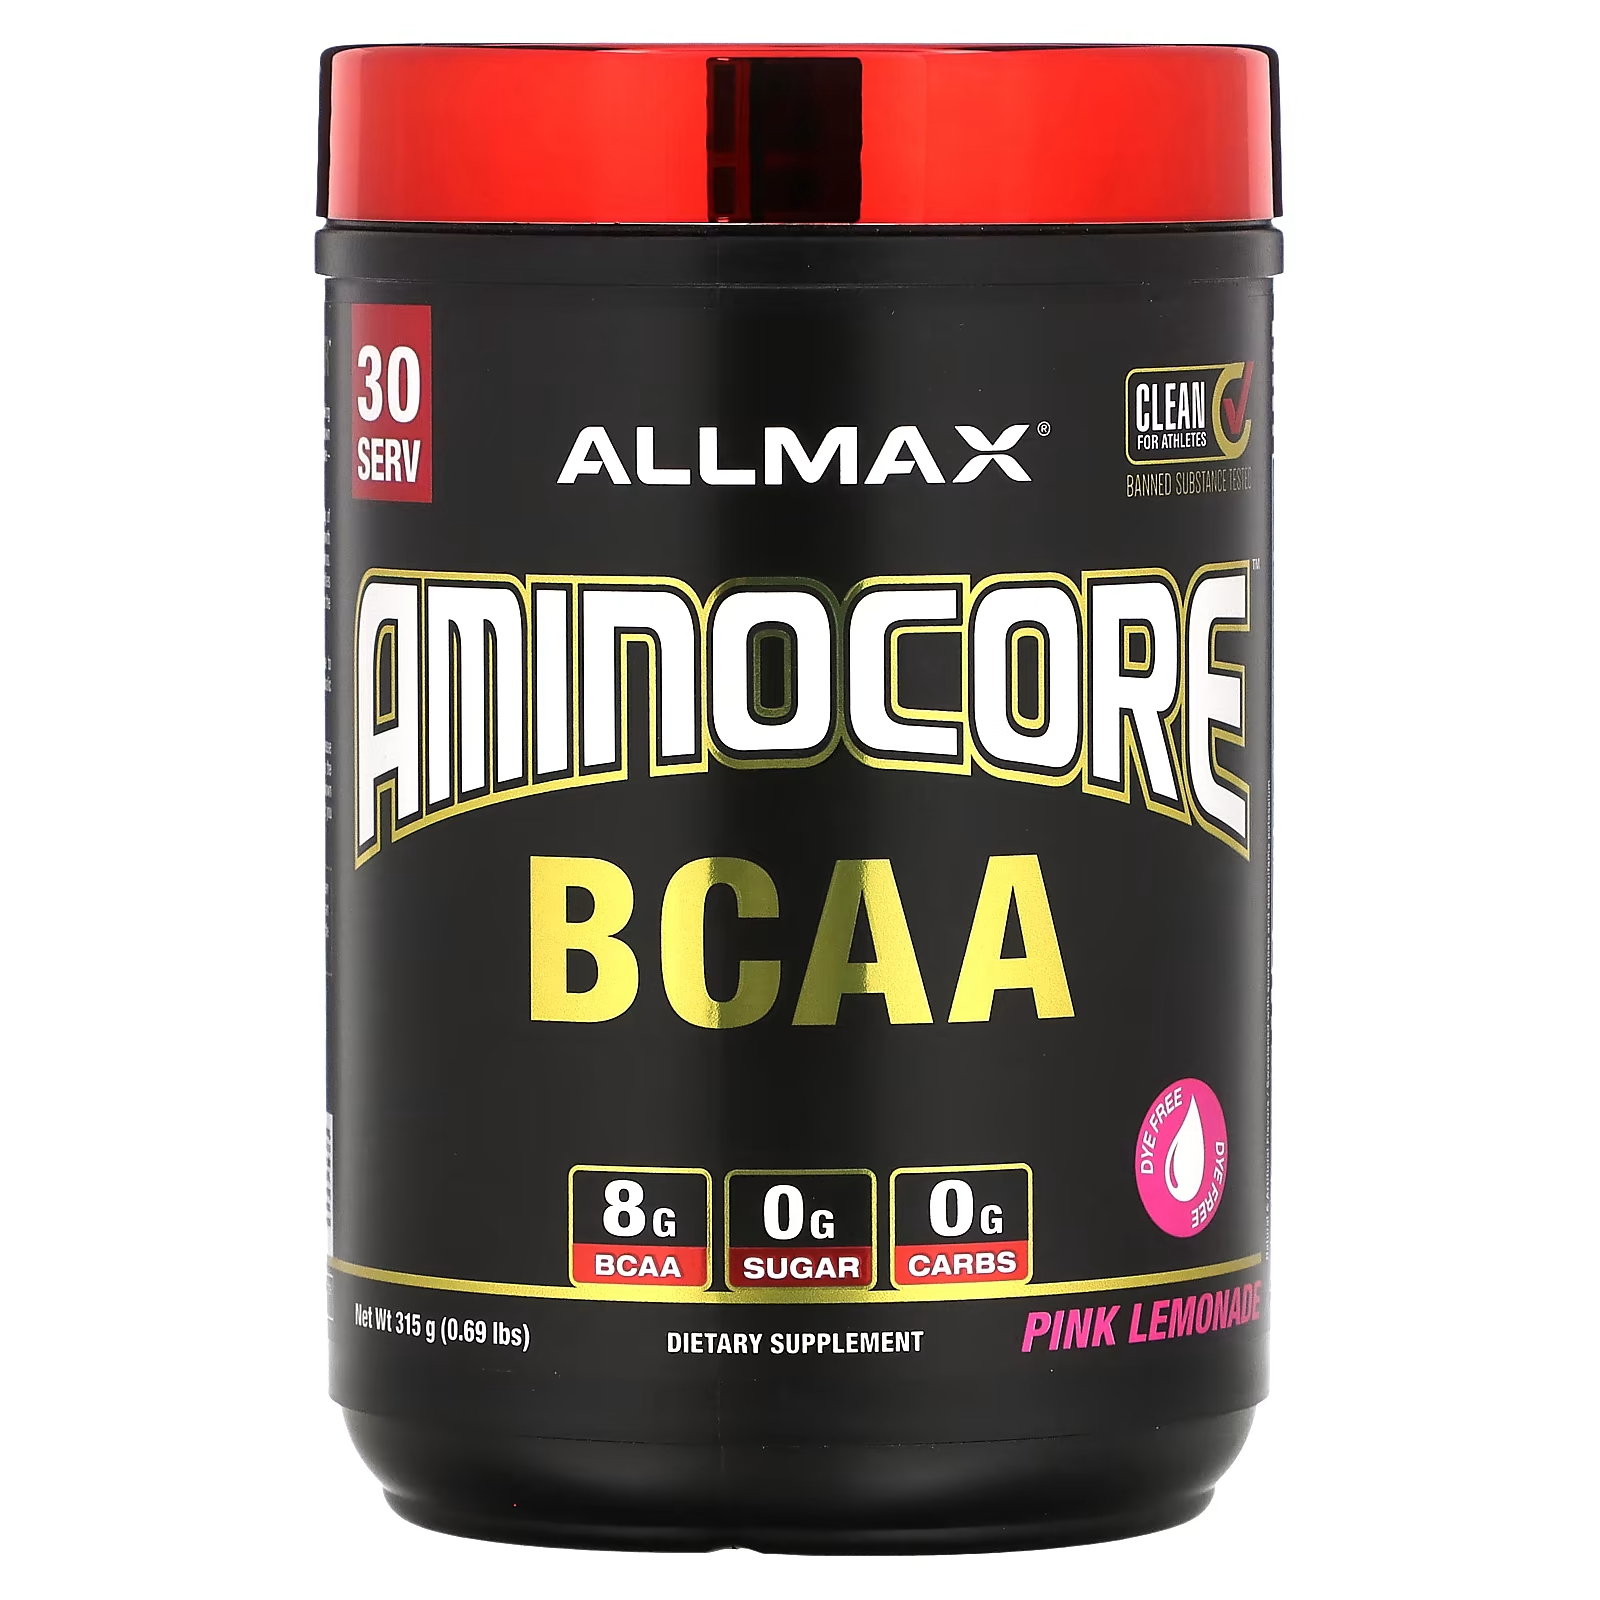 Пищевая добавка ALLMAX AMINOCORE BCAA, розовый лимонад добавка для наращивания мышечной массы muscletech 90 капсул